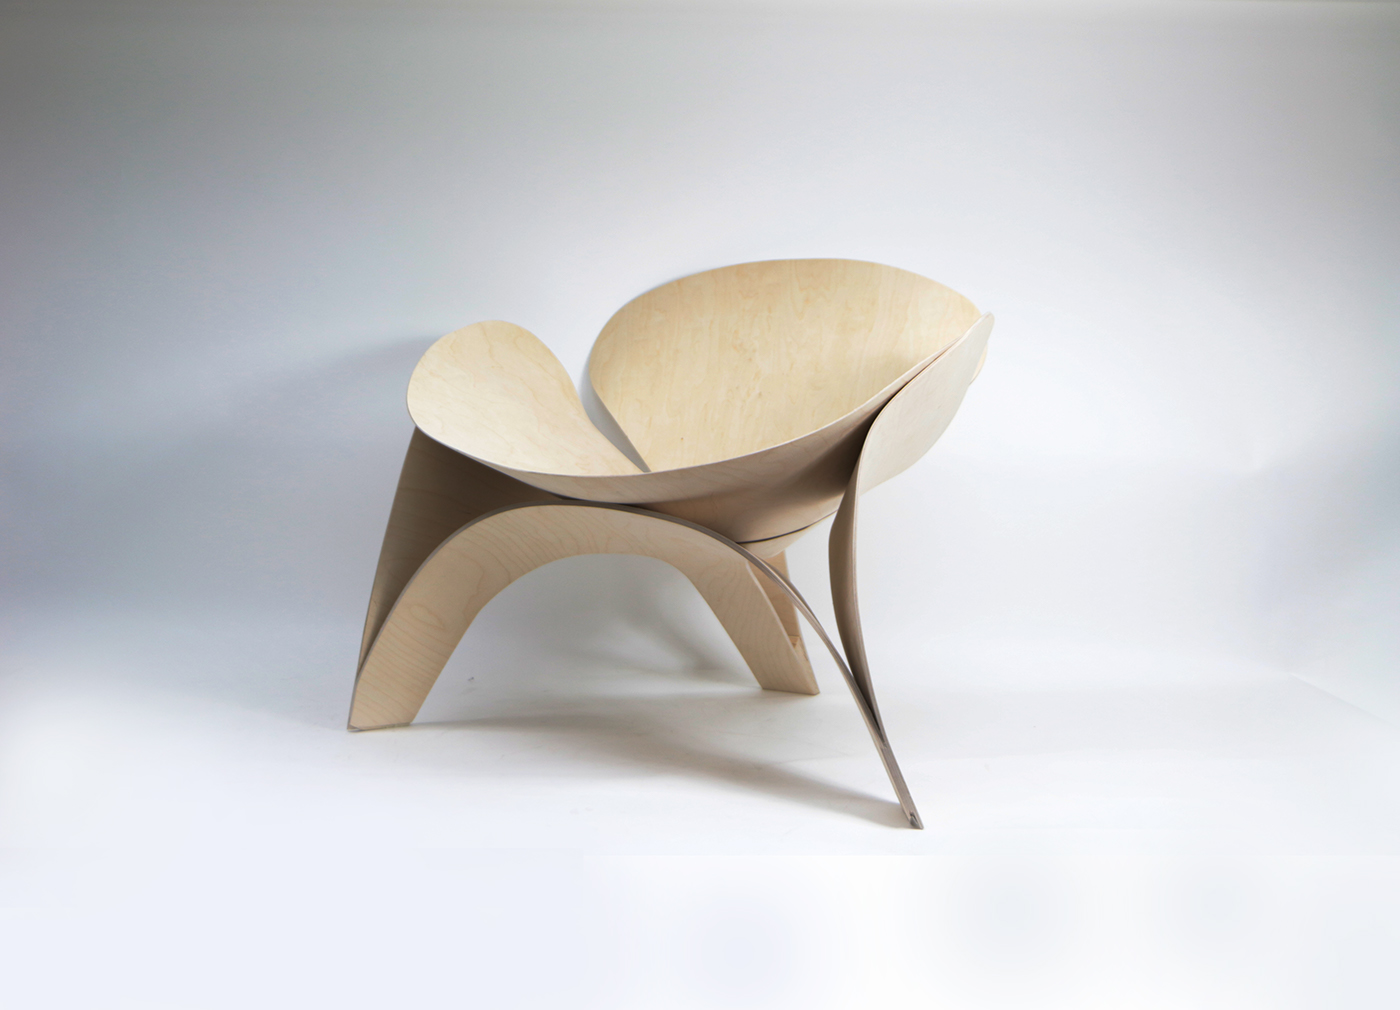 furniture design  interior design  design product furniture plywood wood